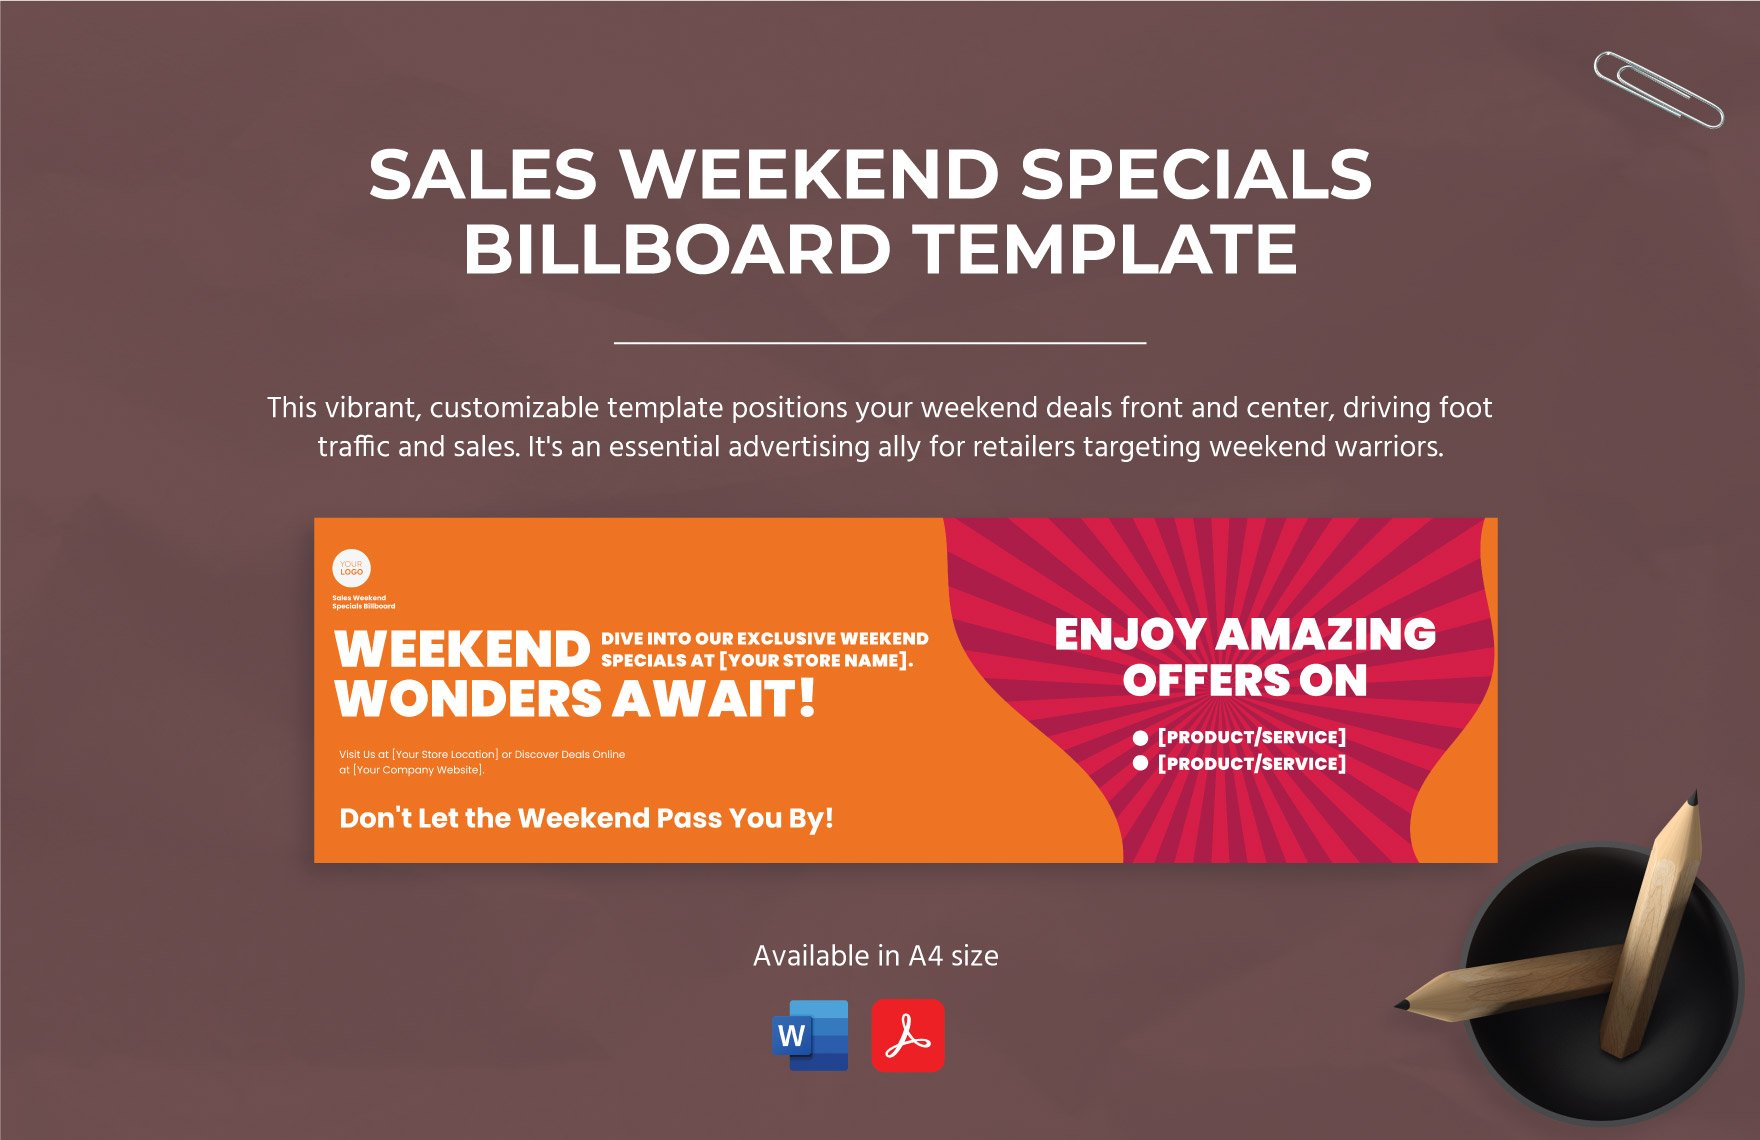 Sales Weekend Specials Billboard Template in Word, PDF